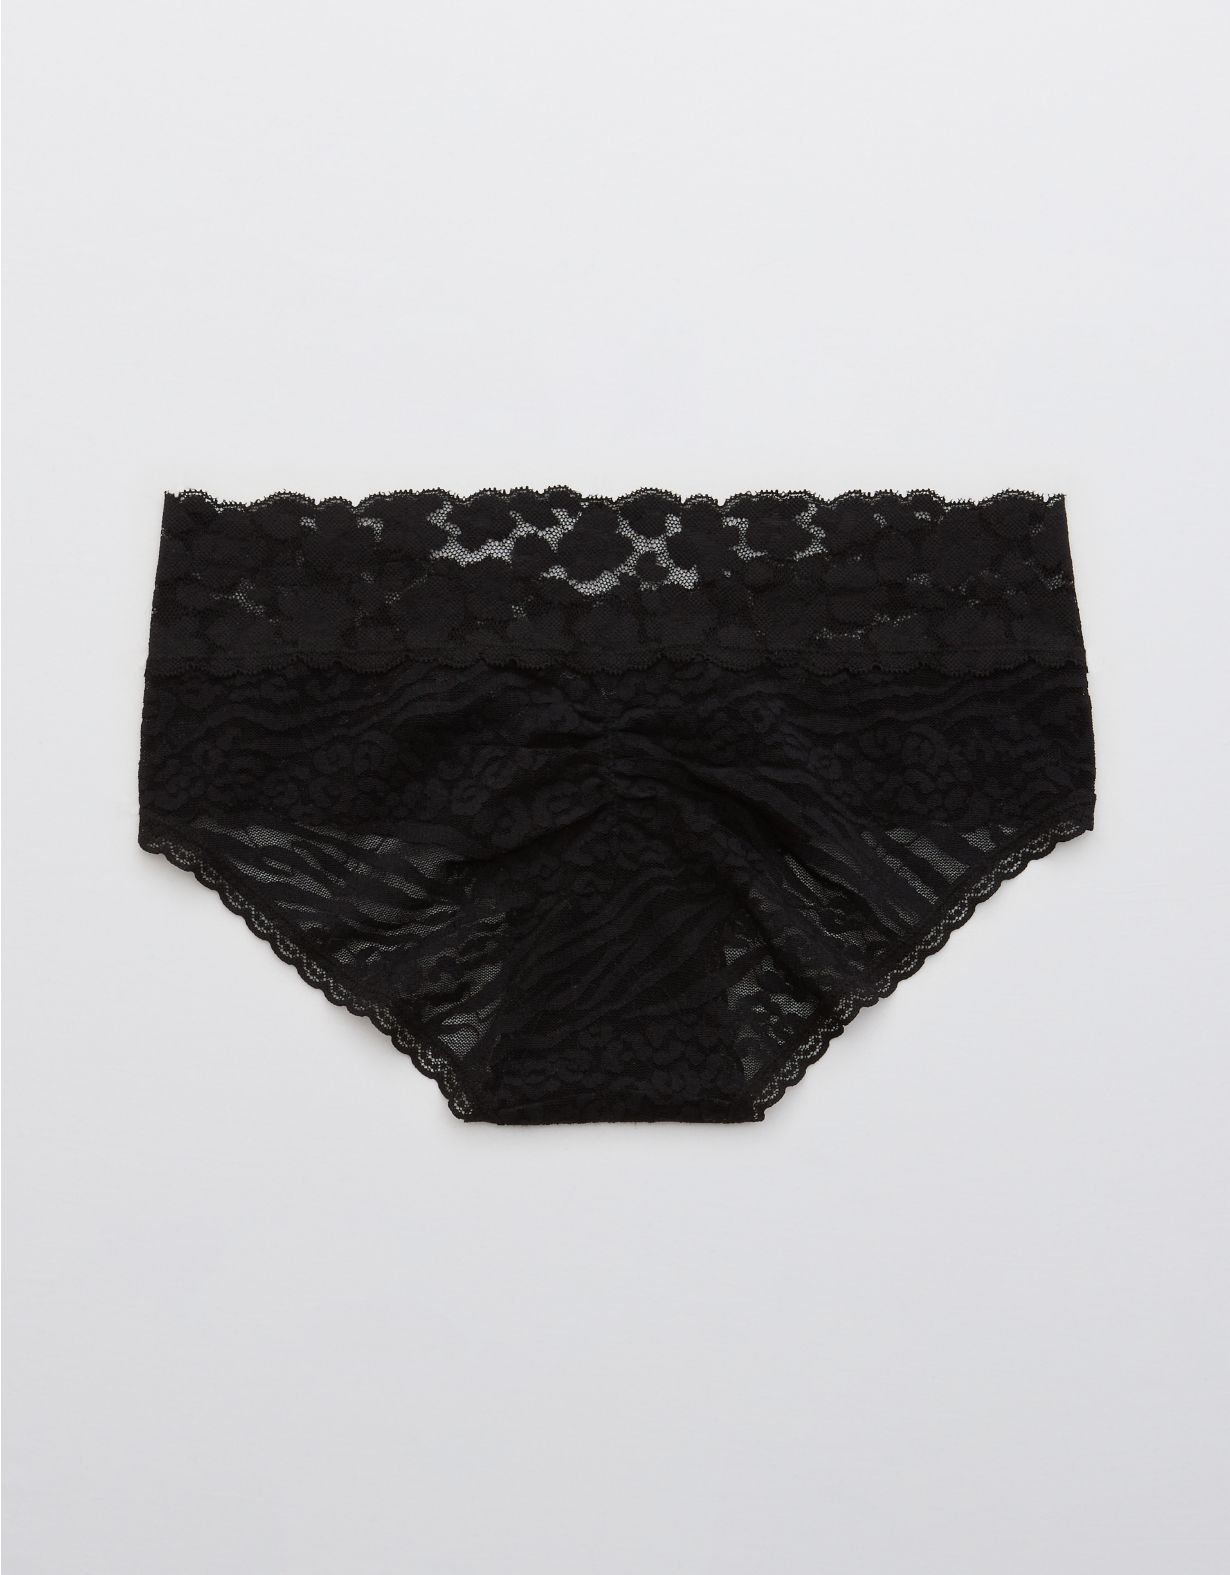 Aerie Wild Side Lace Boybrief Underwear